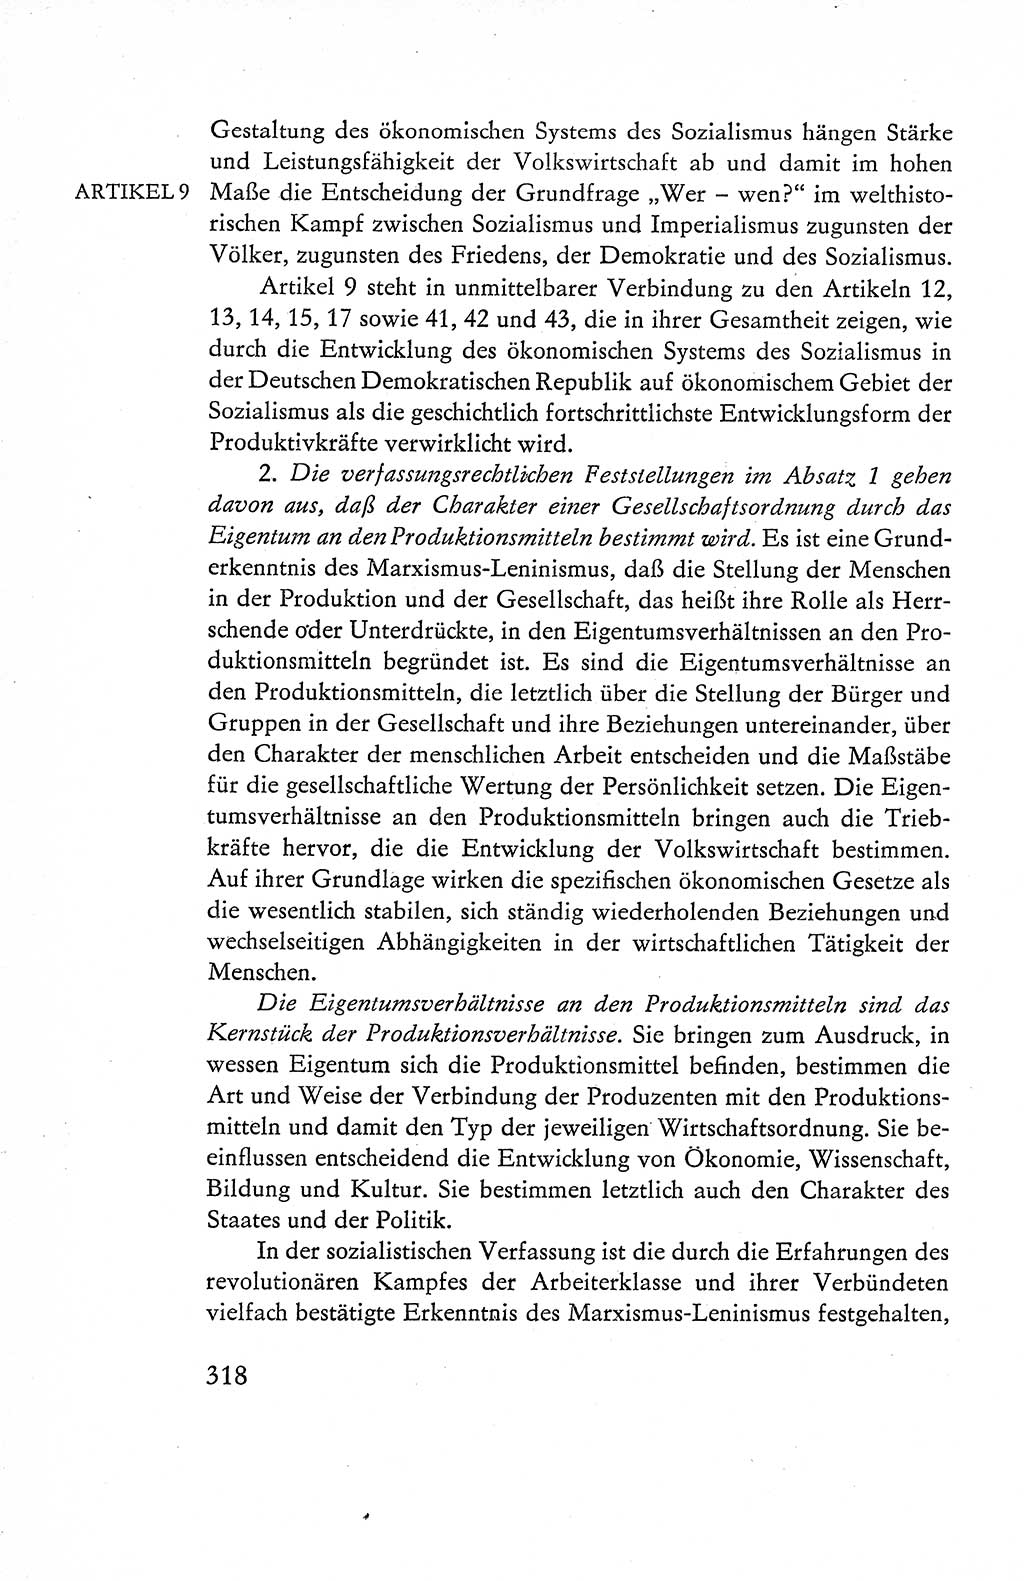 Verfassung der Deutschen Demokratischen Republik (DDR), Dokumente, Kommentar 1969, Band 1, Seite 318 (Verf. DDR Dok. Komm. 1969, Bd. 1, S. 318)